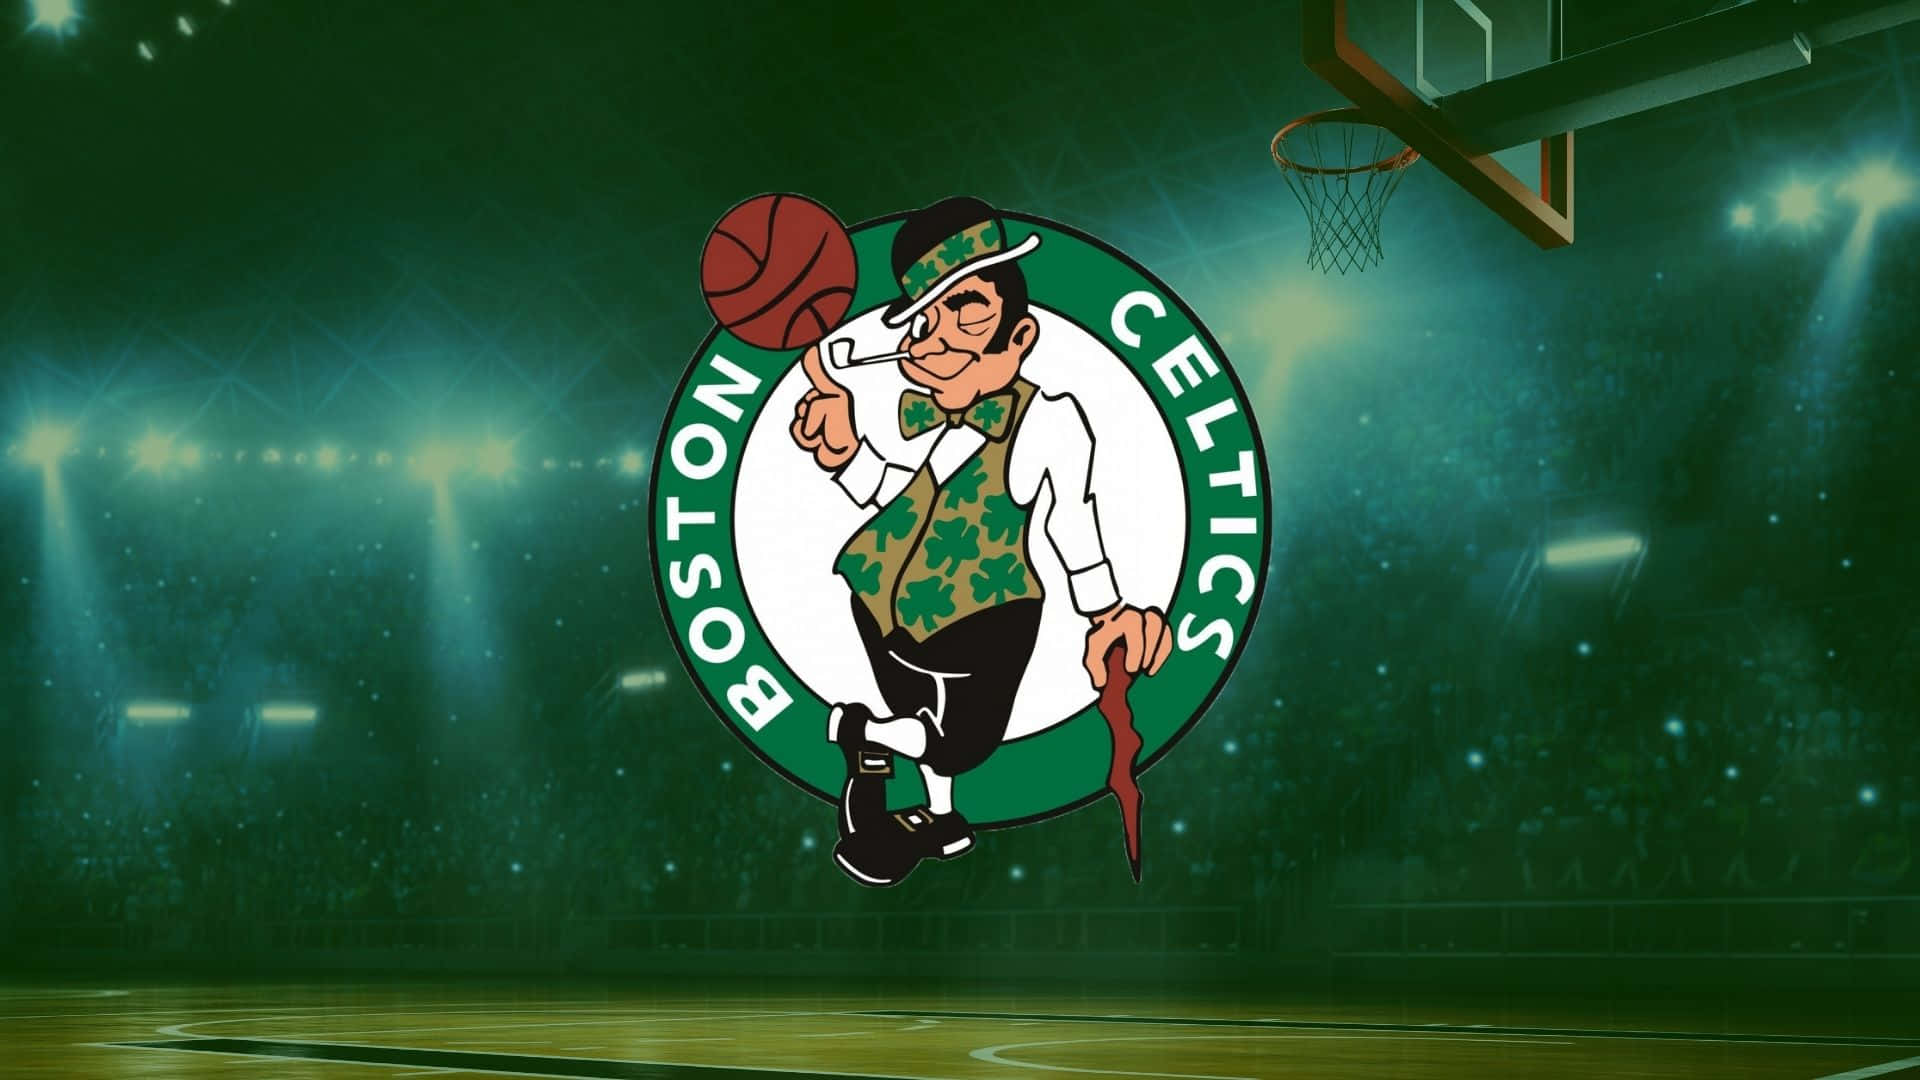 Feiernsie Den Erfolg Mit Den Boston Celtics! Wallpaper